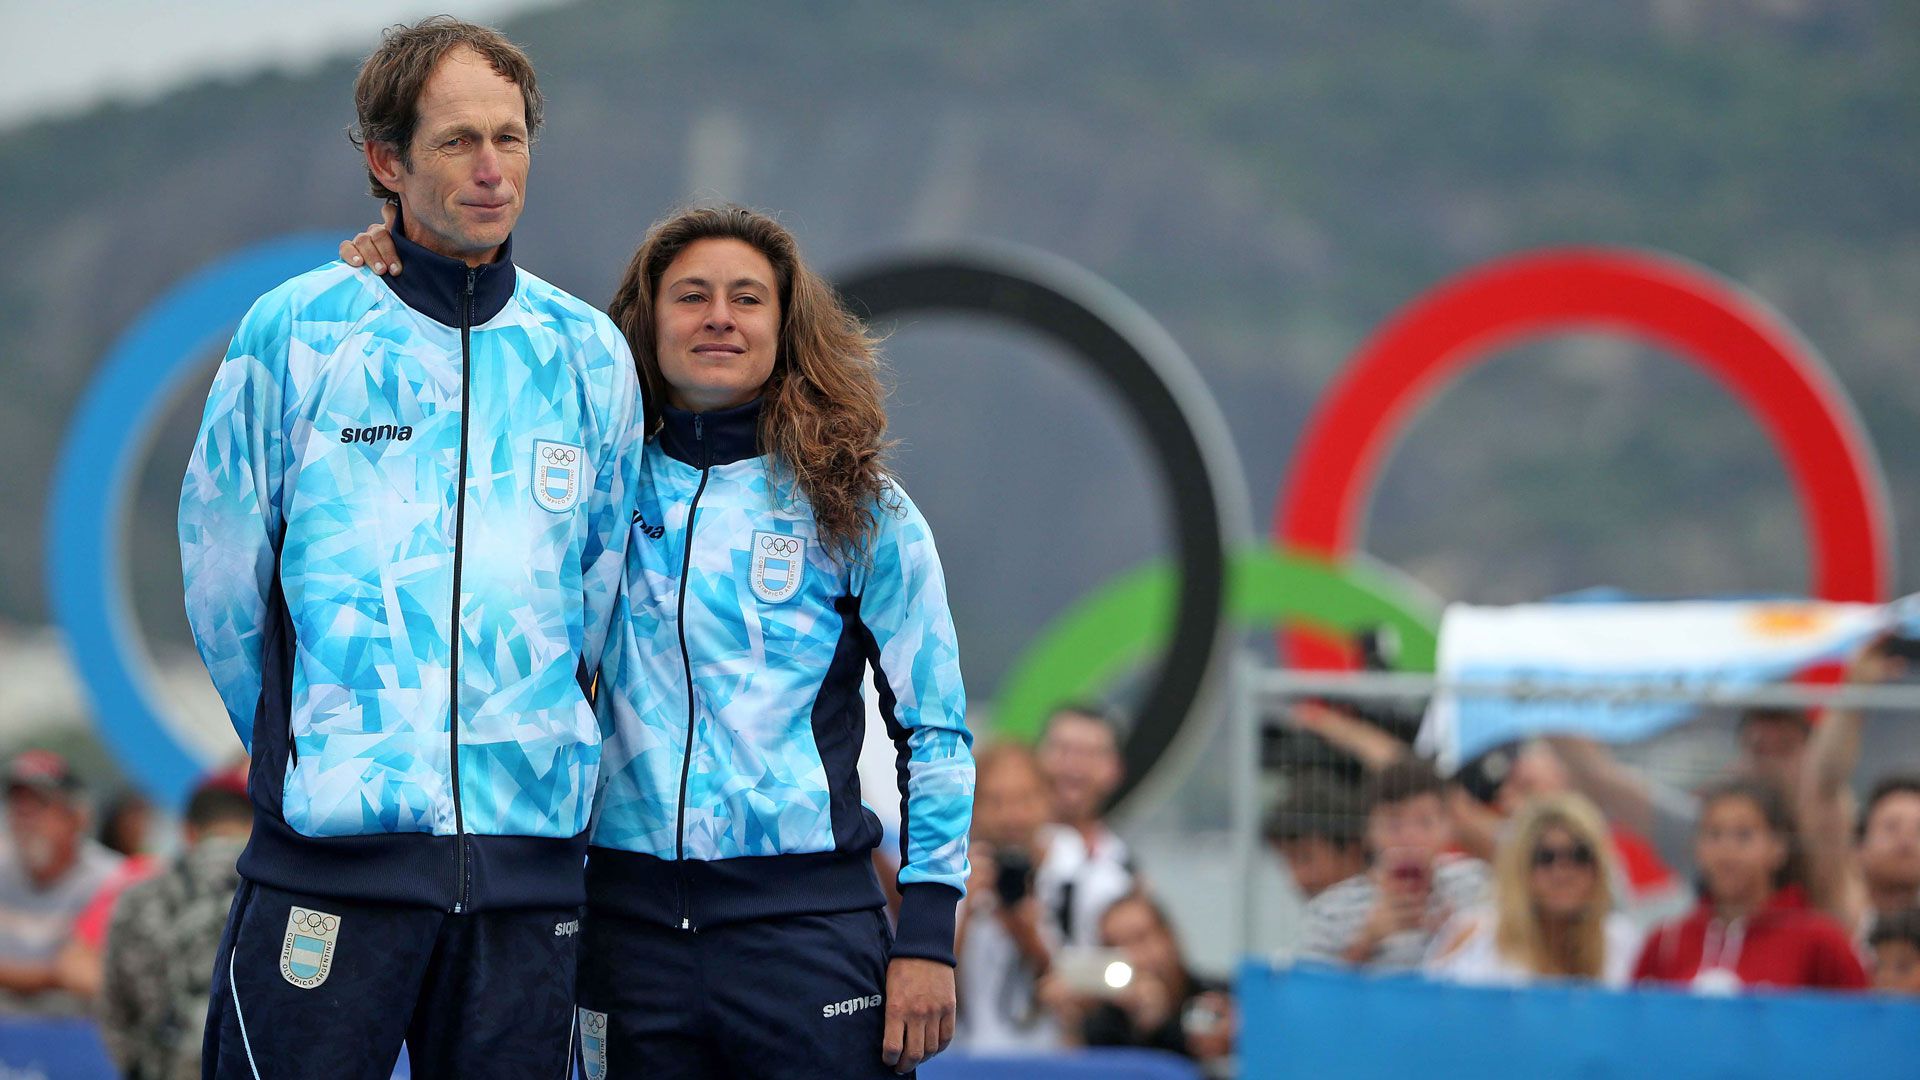 Santiago Lange y Cecilia Carranza, ganadores del oro en los Juegos Olímpicos de Río 2016 (Télam)